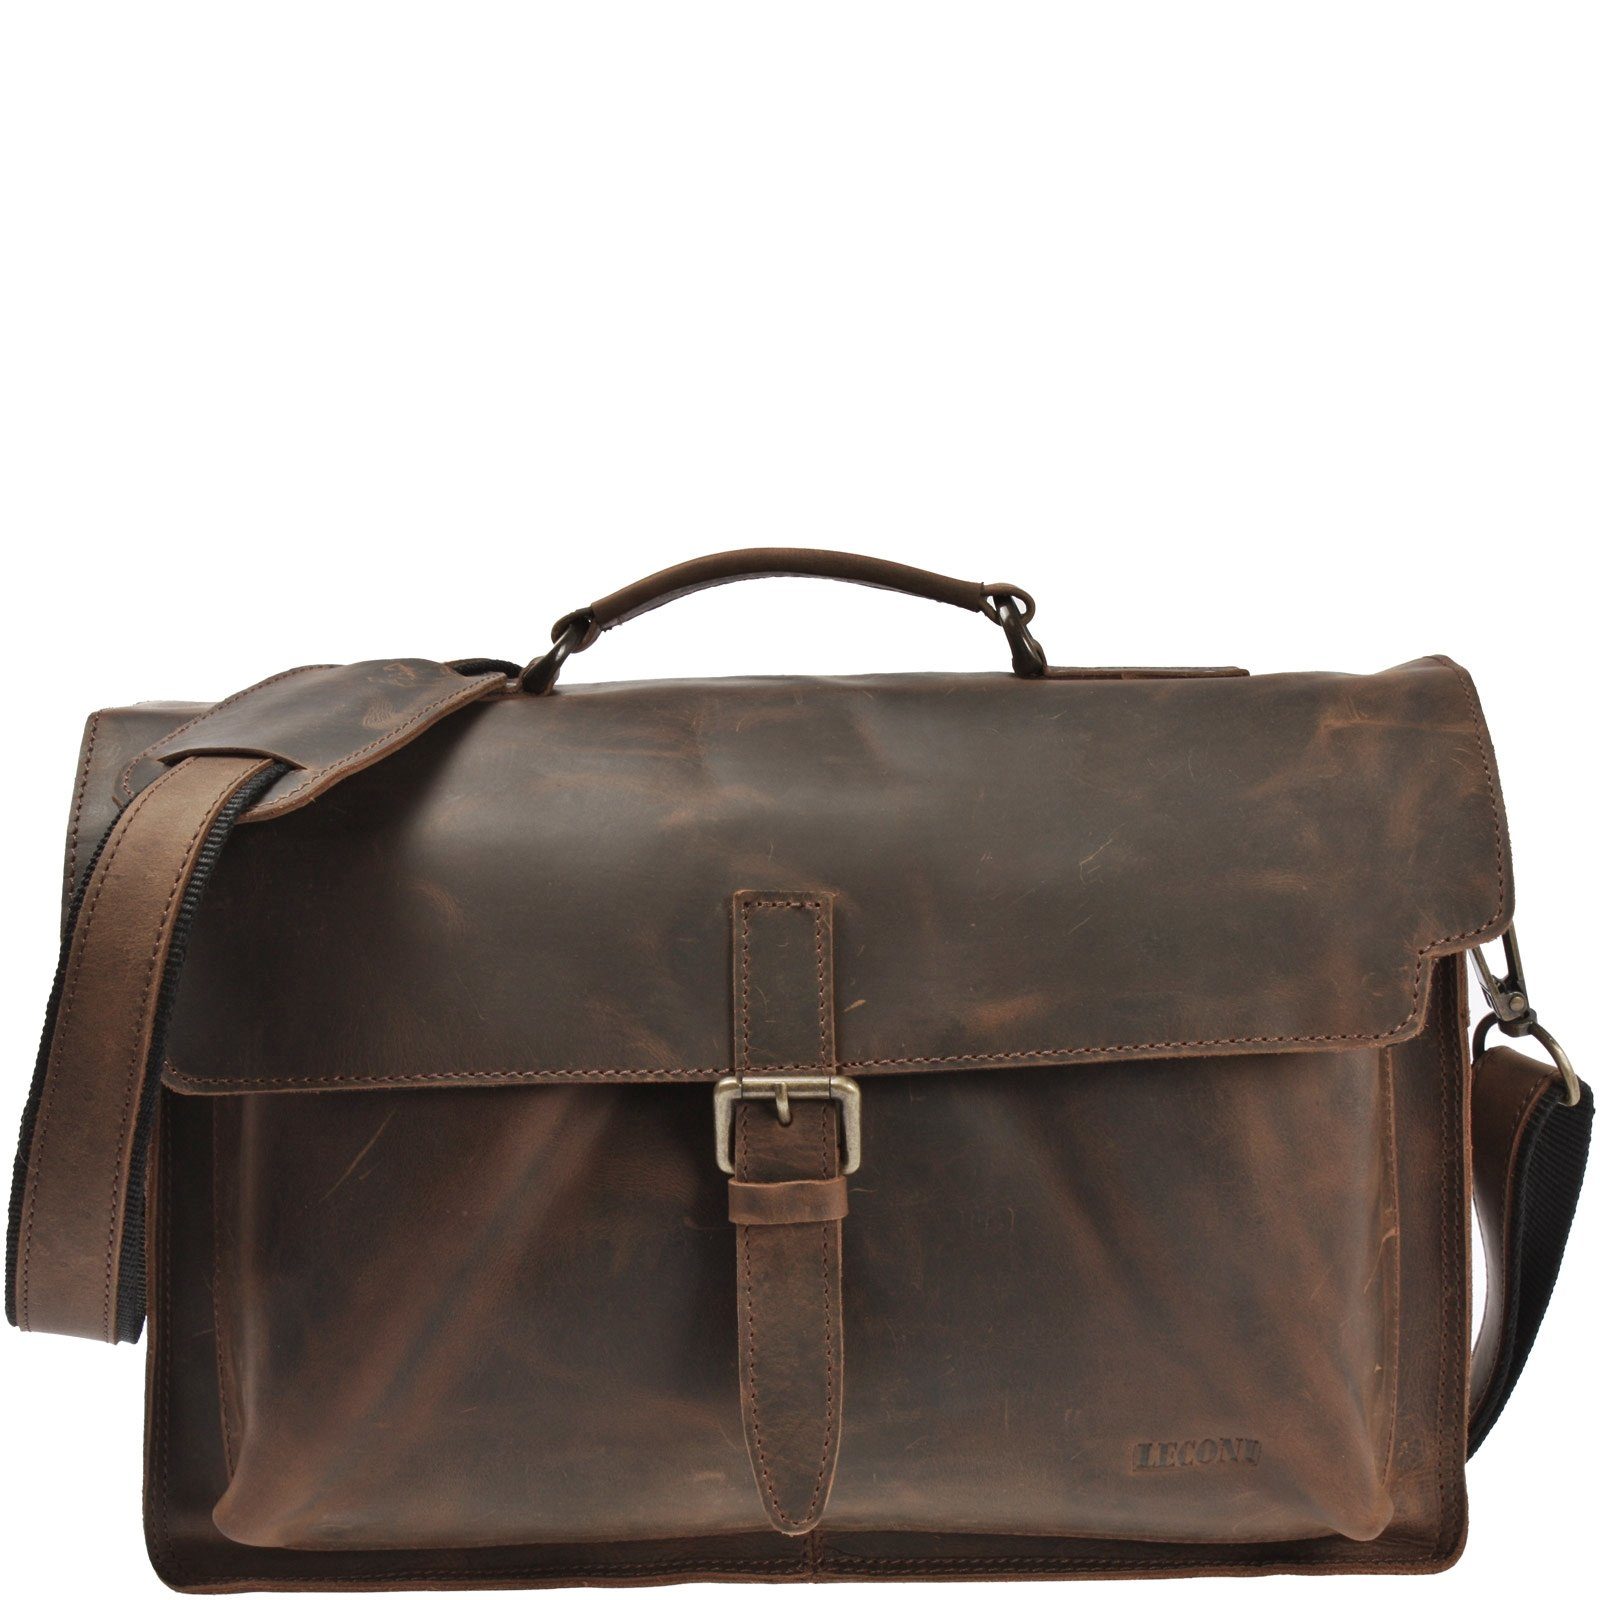 LECONI Aktentasche Aktentasche Businesstasche Messenger Bag Vintage Leder LE3008 schlamm